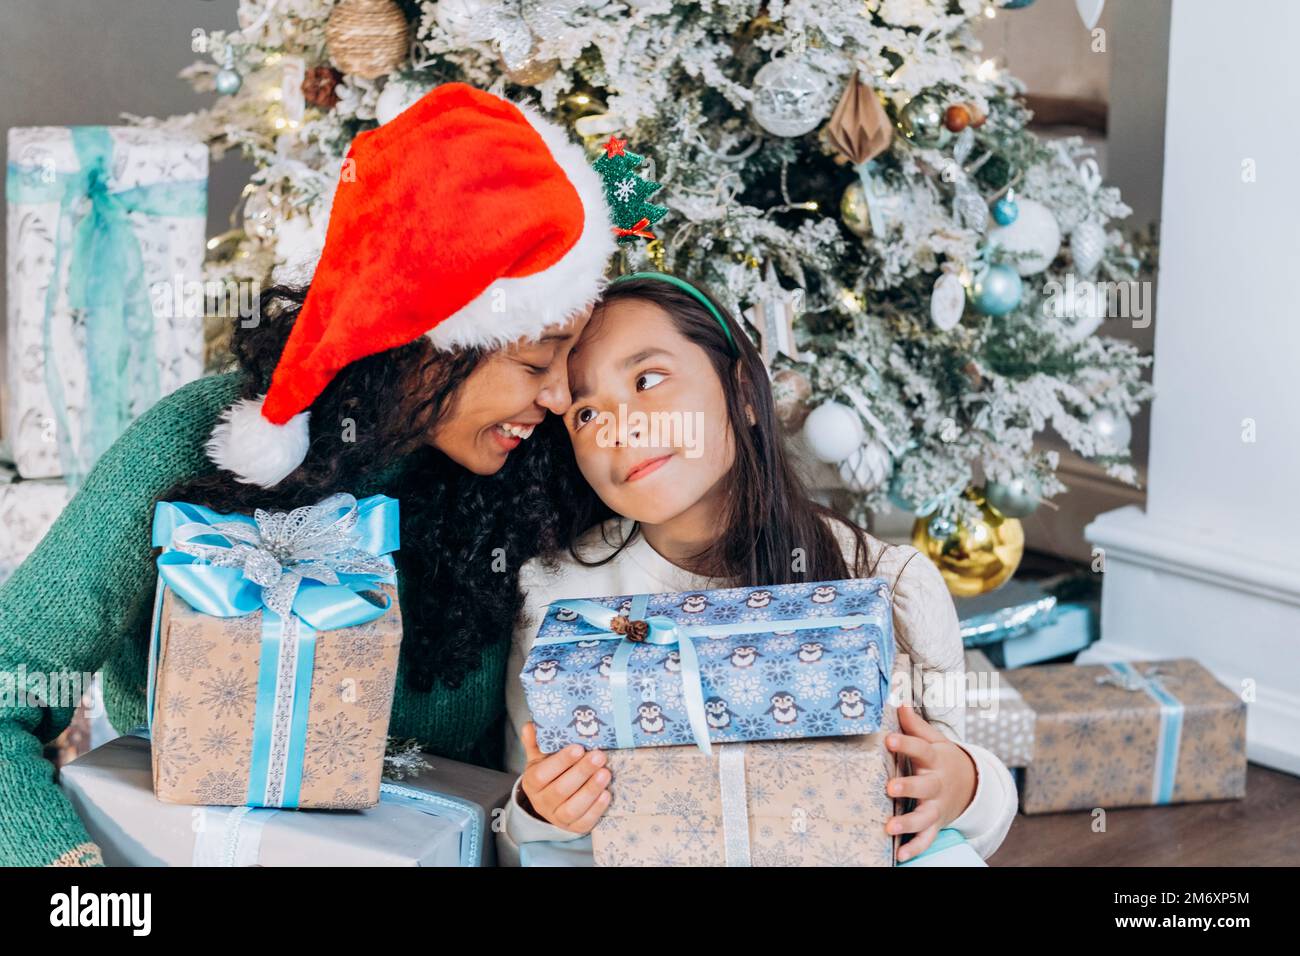 Curly African American donna e bruna ragazza dai capelli lunghi che indossa i cappelli di festa aprire le scatole presenti con sorriso che siede all'albero di Natale Foto Stock